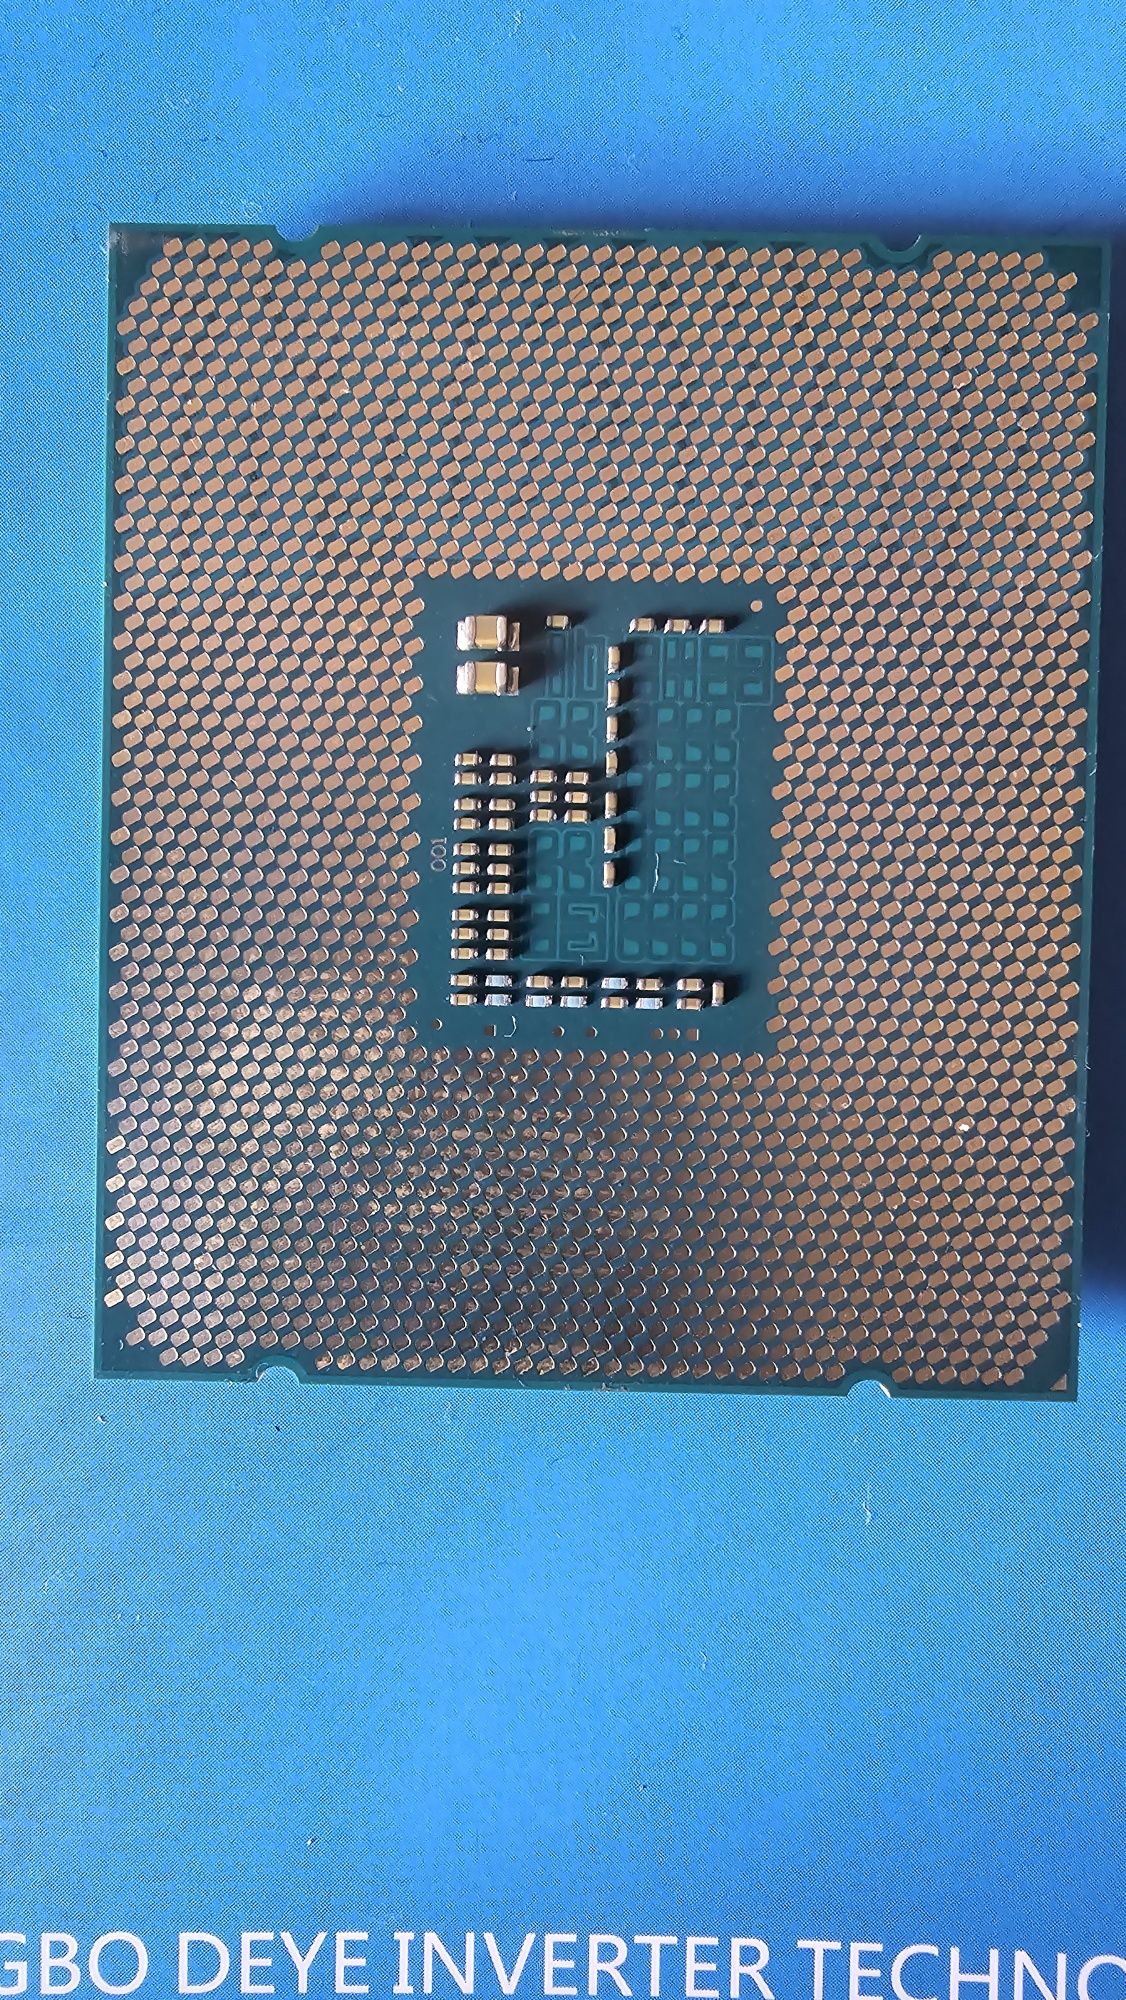 Процесор Intel i7 5960x 2011-3